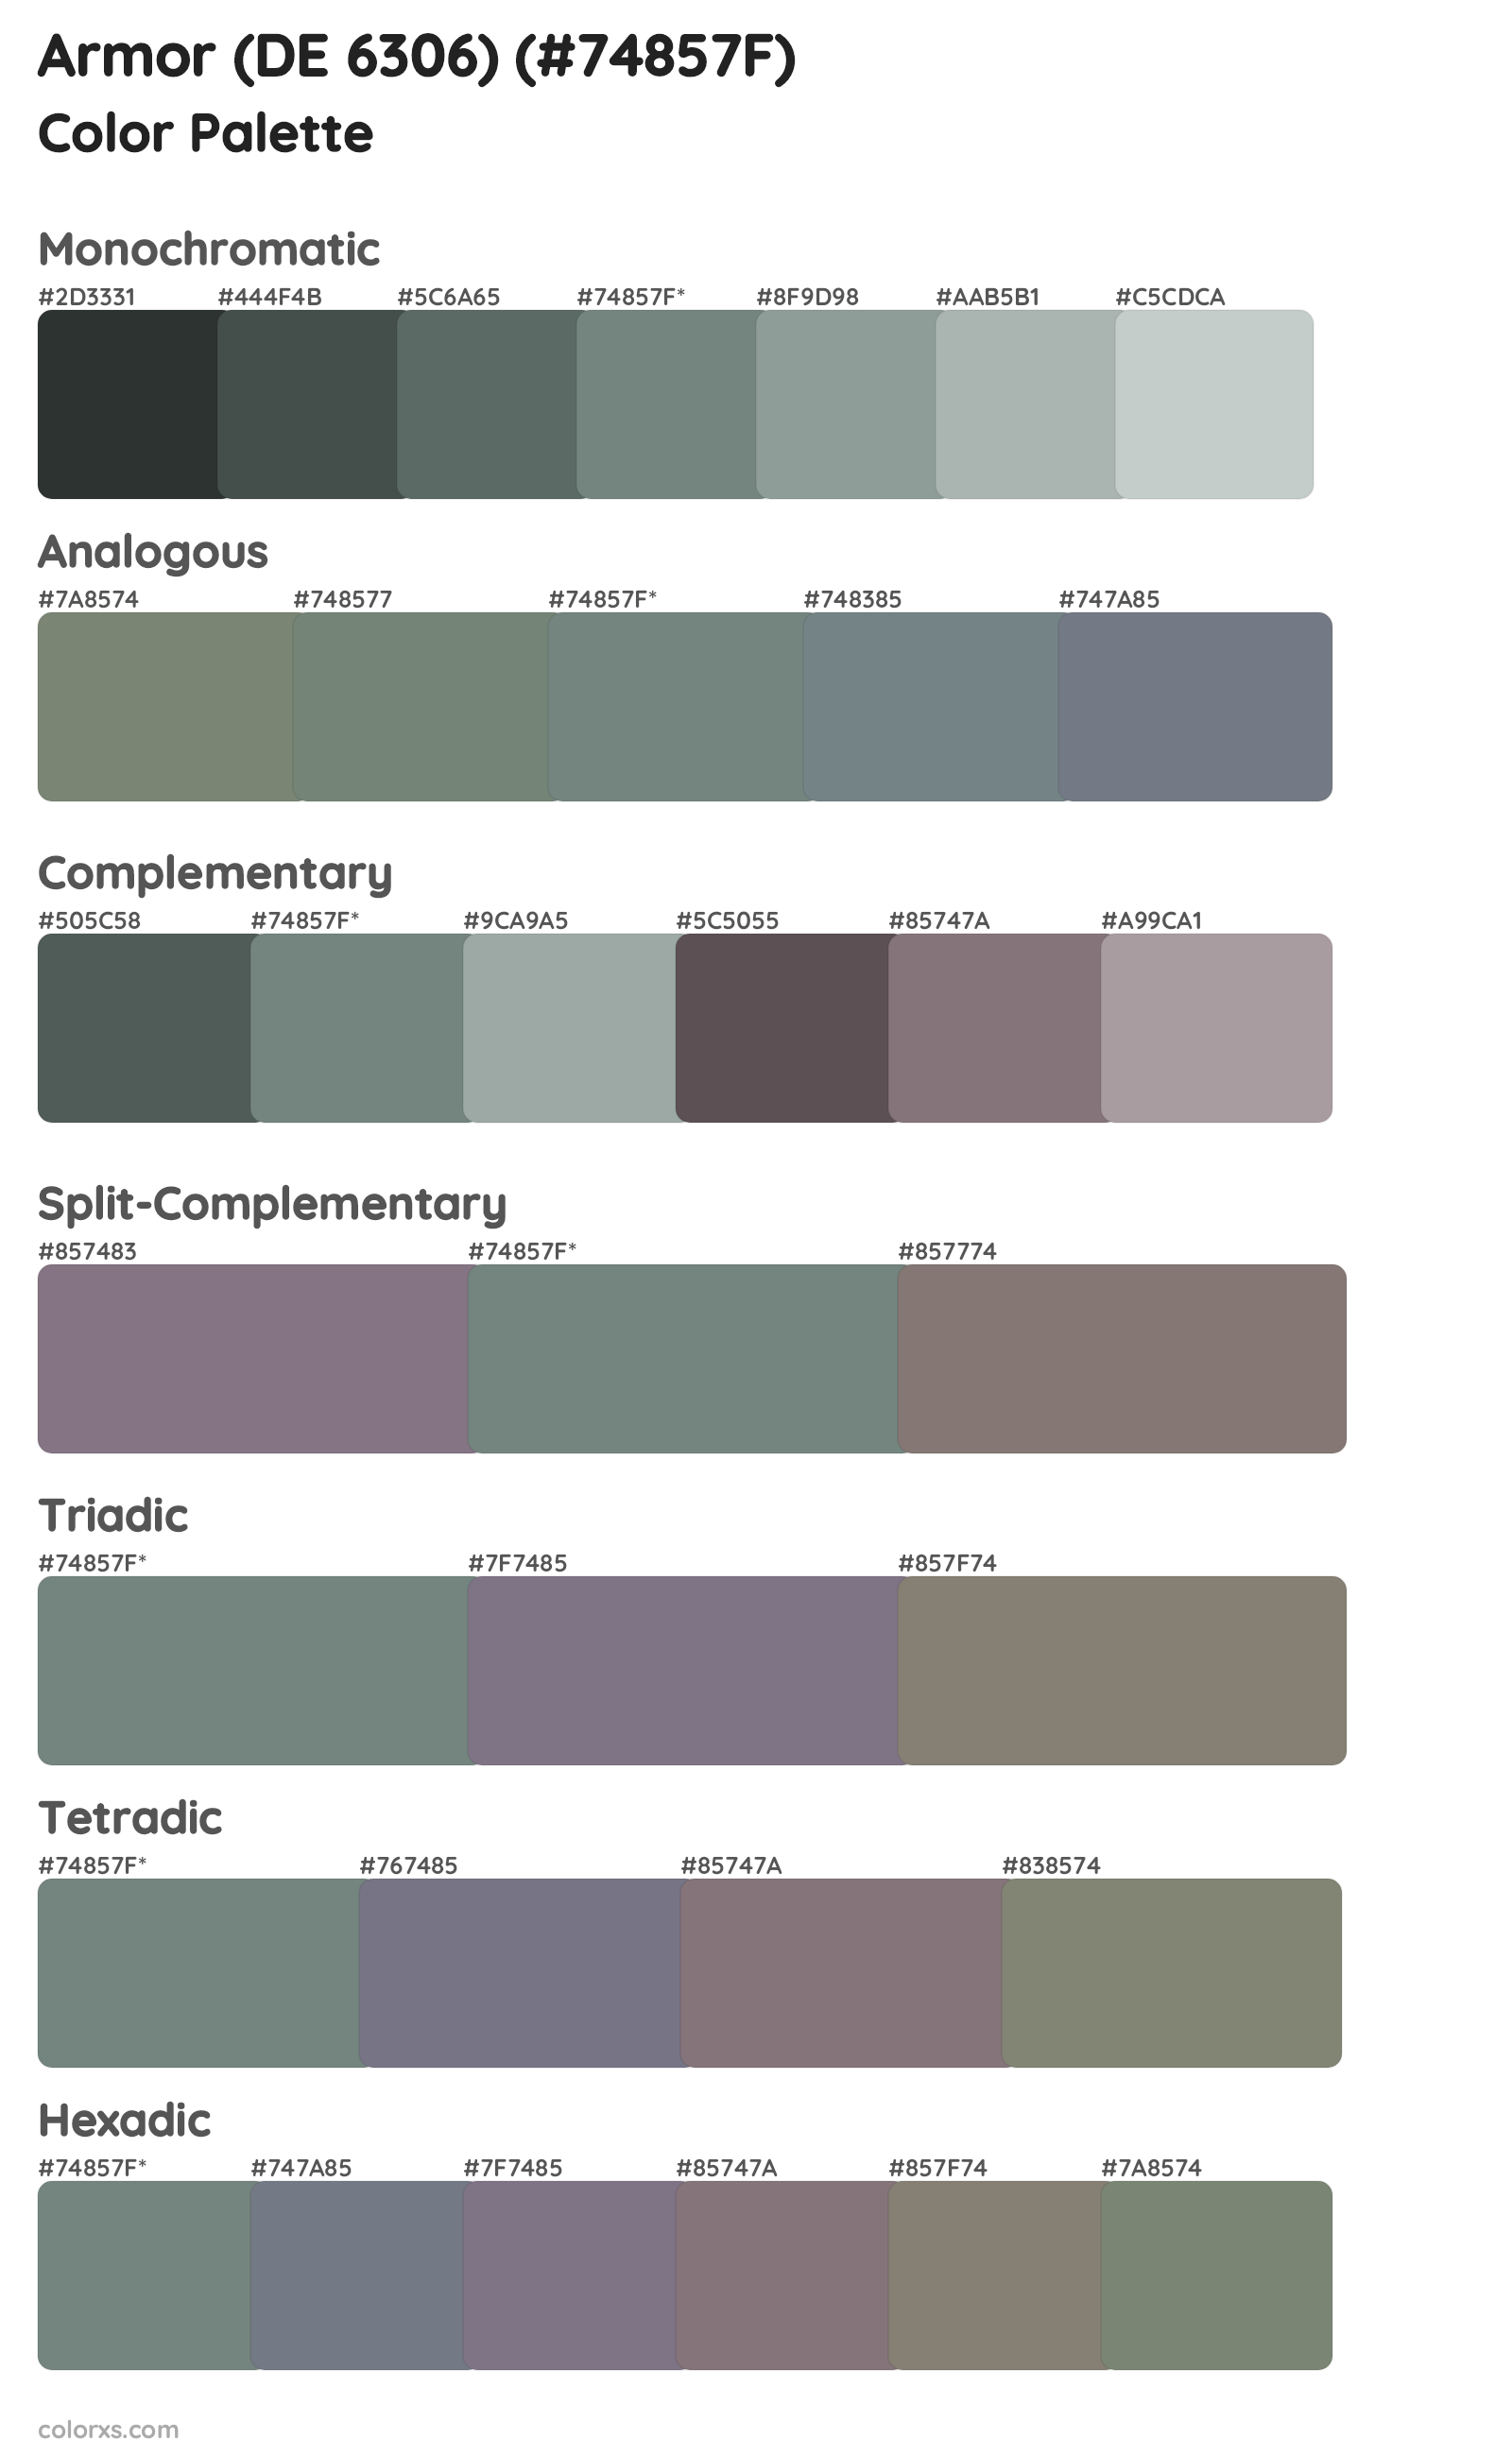 Armor (DE 6306) Color Scheme Palettes